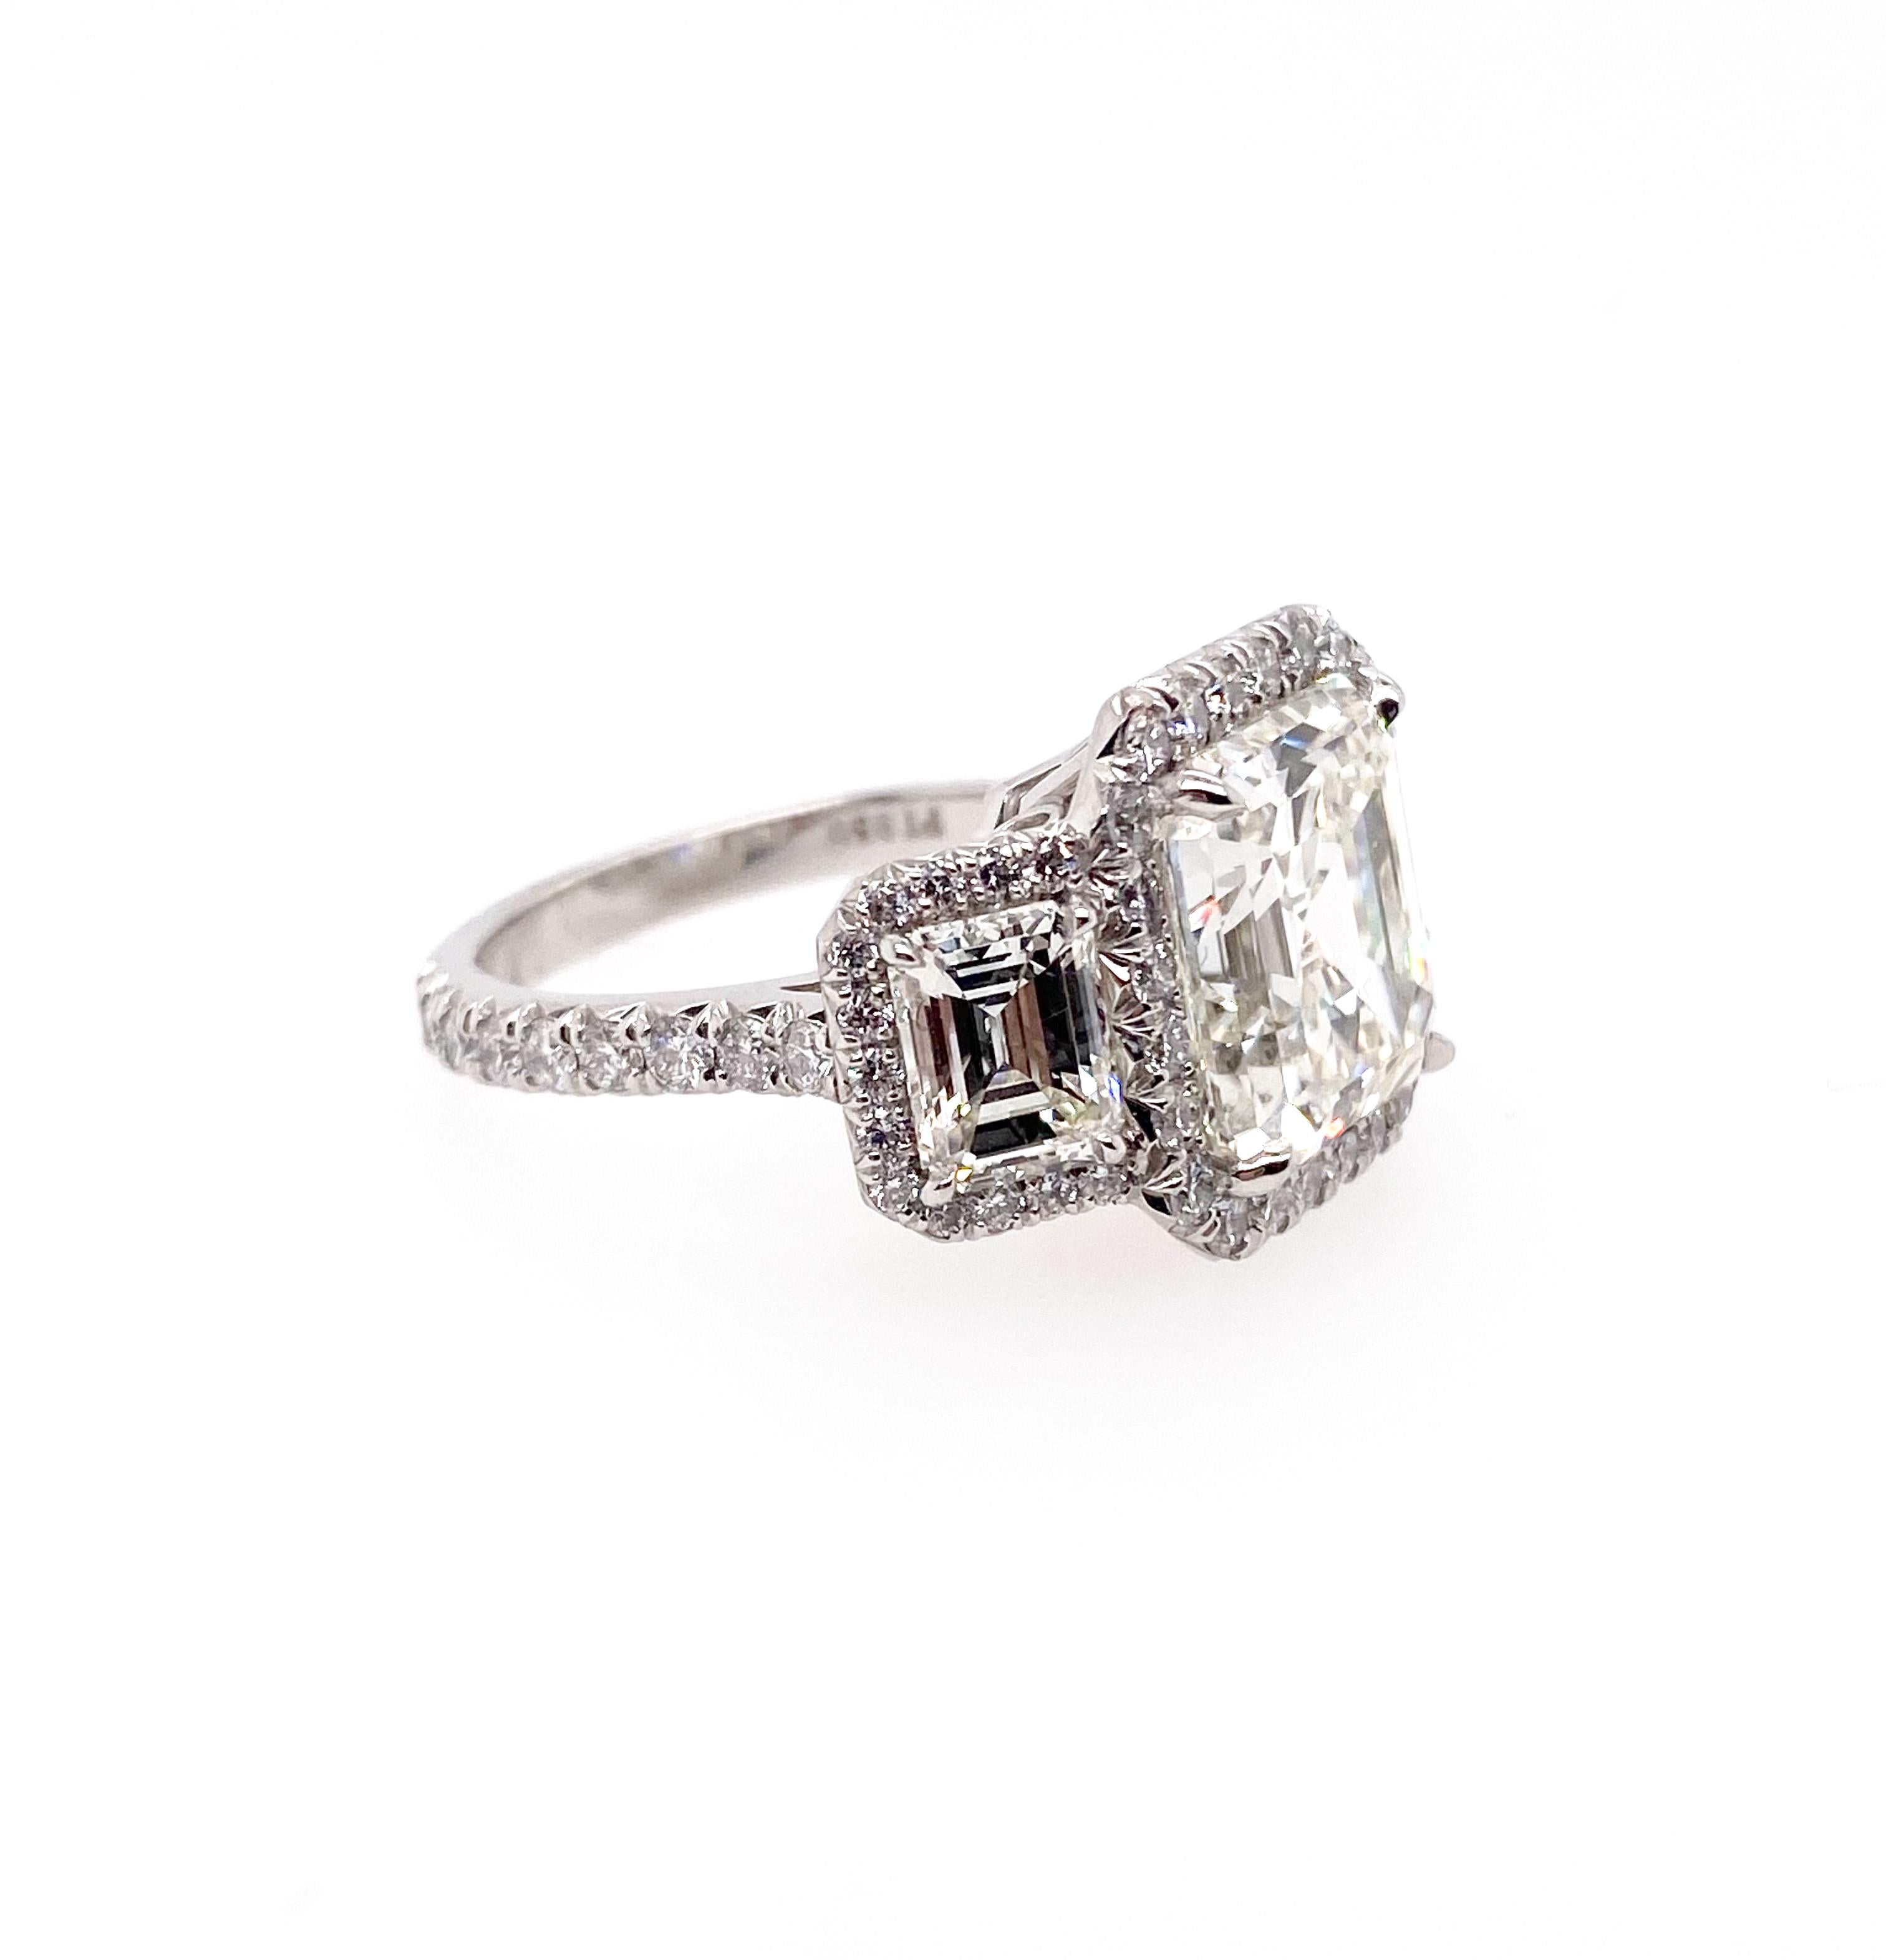 Schöner GIA-zertifizierter Diamant mit 6,13 Karat im Asscher-Schliff, montiert in einem Platinring als Mittelstein. Er ist mit zwei GIA-zertifizierten Diamanten im Smaragdschliff von jeweils 0,90 Karat besetzt. Darüber hinaus rahmten die runden